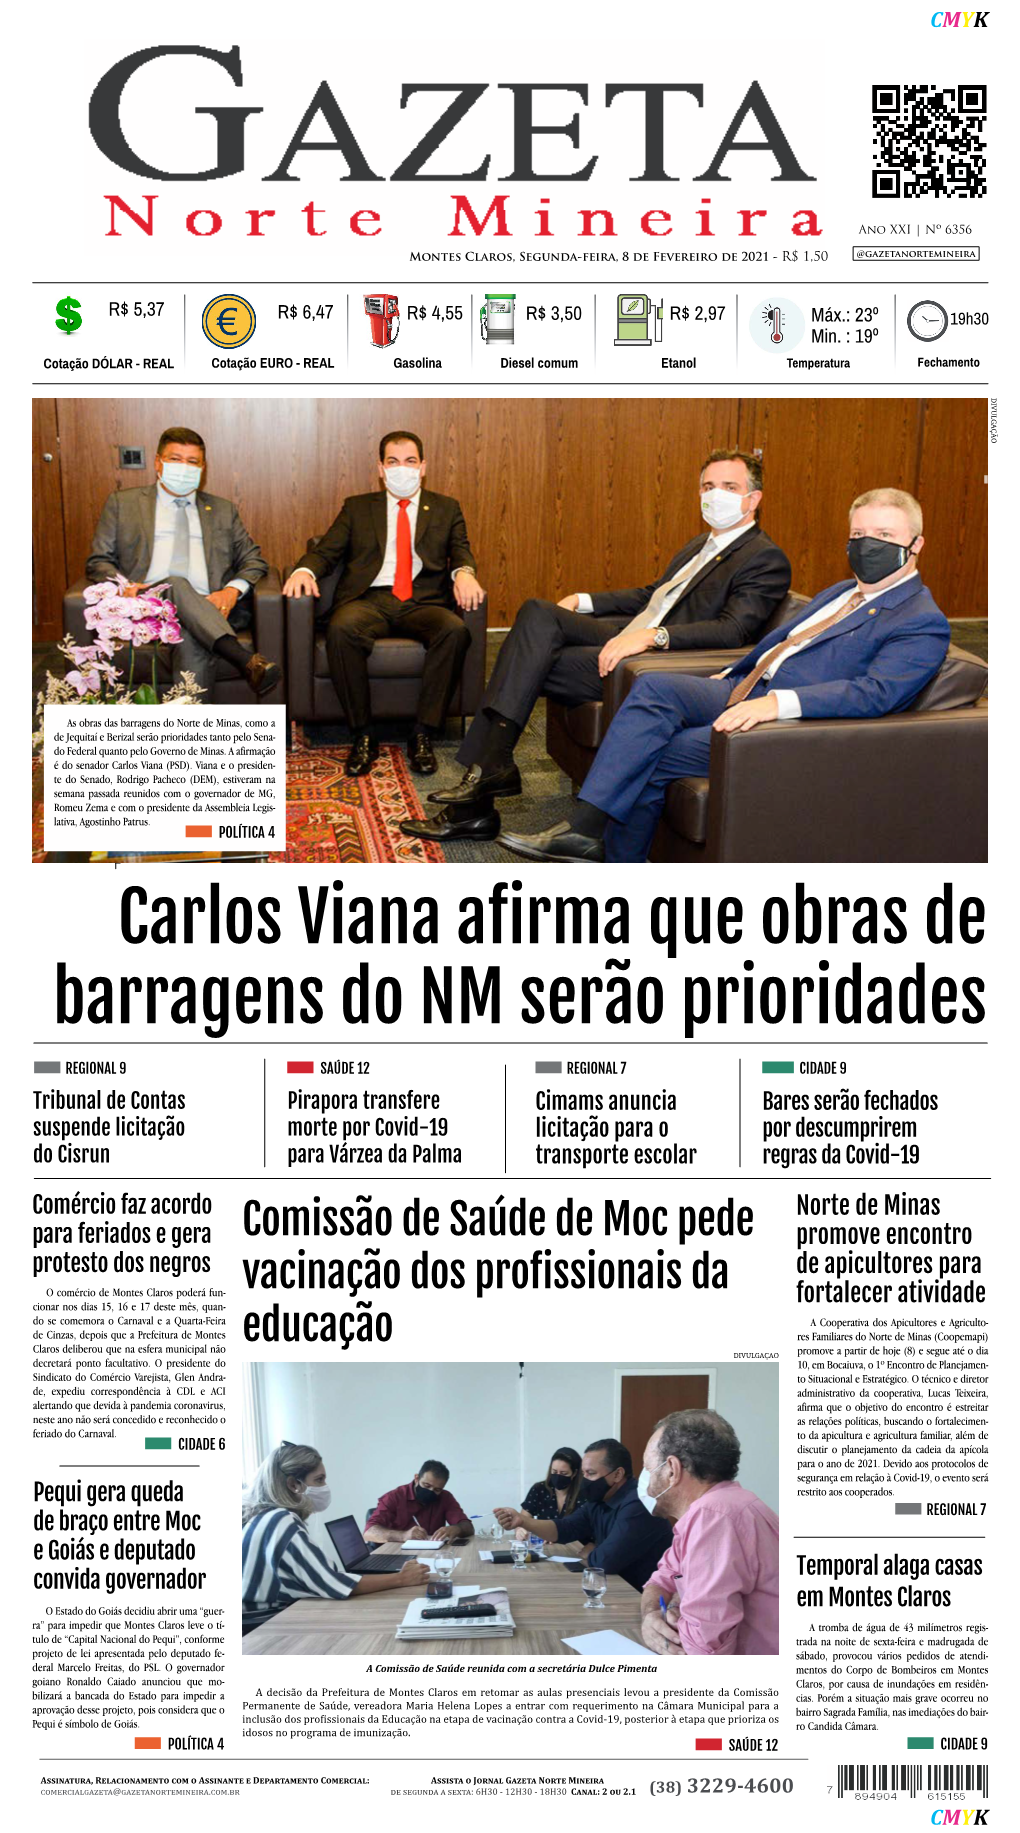 Carlos Viana Afirma Que Obras De Barragens Do NM Serão Prioridades